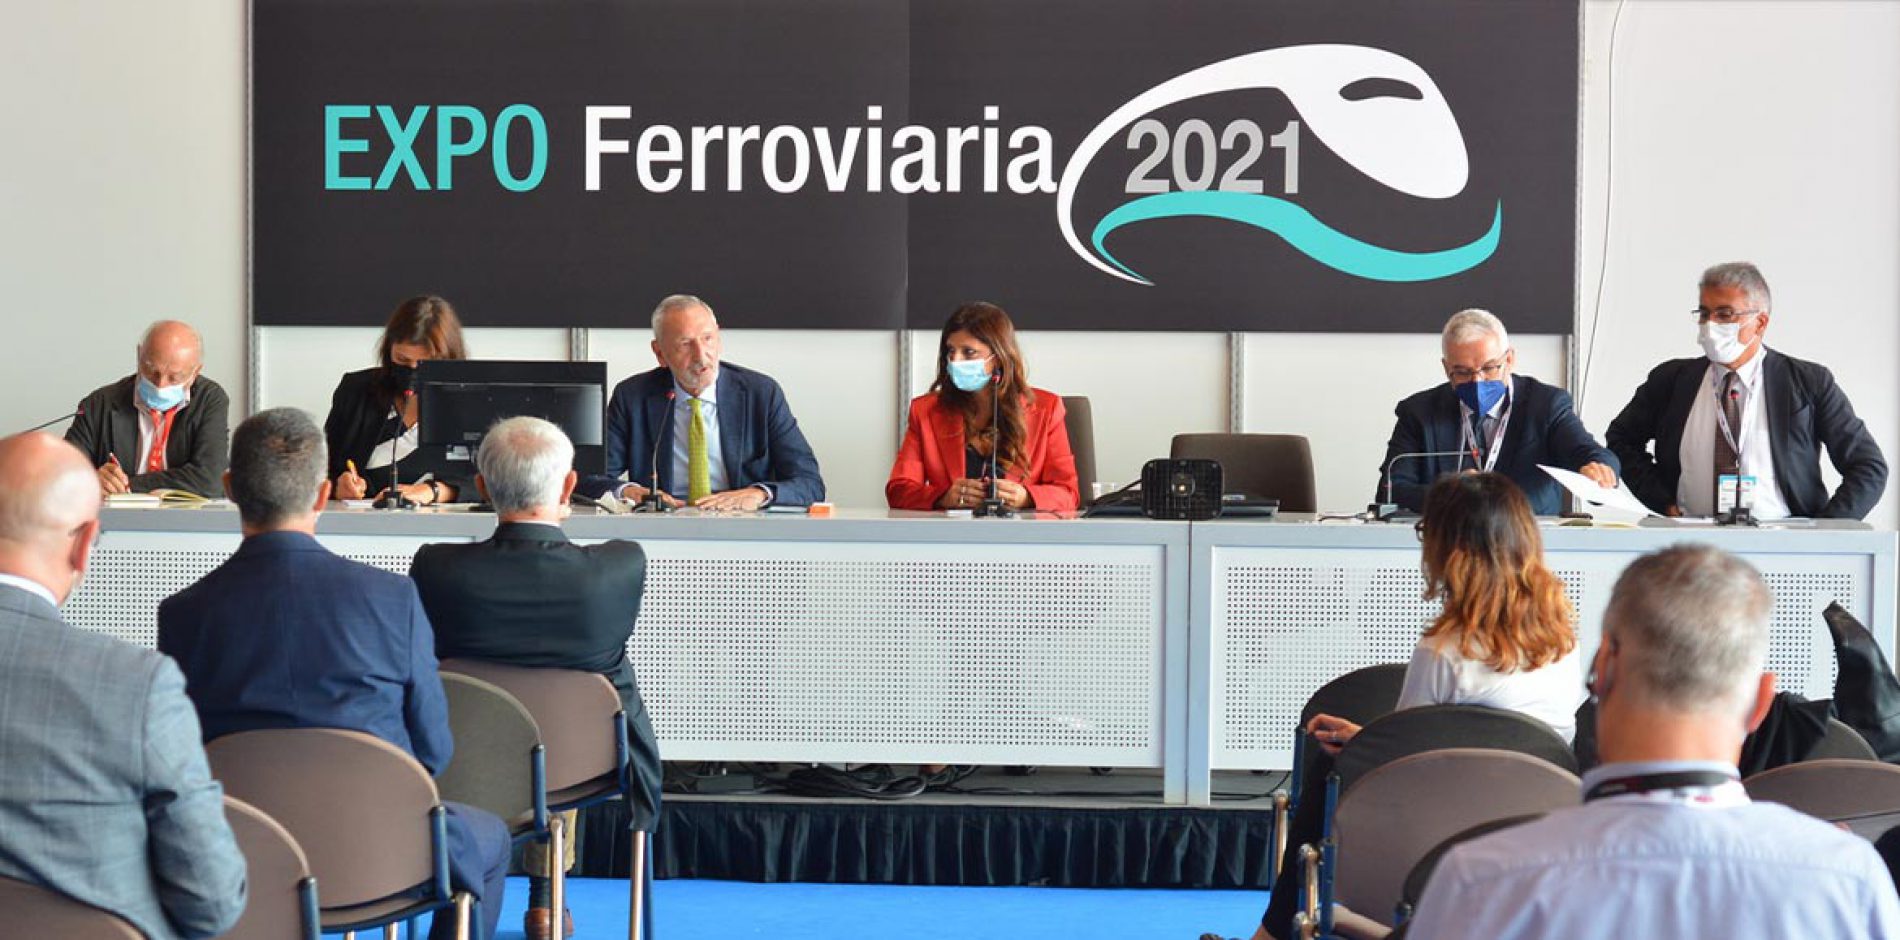 EXPO Ferroviaria 2021: le parole di Nietta Novielli, Amministratore Unico di AIAFF